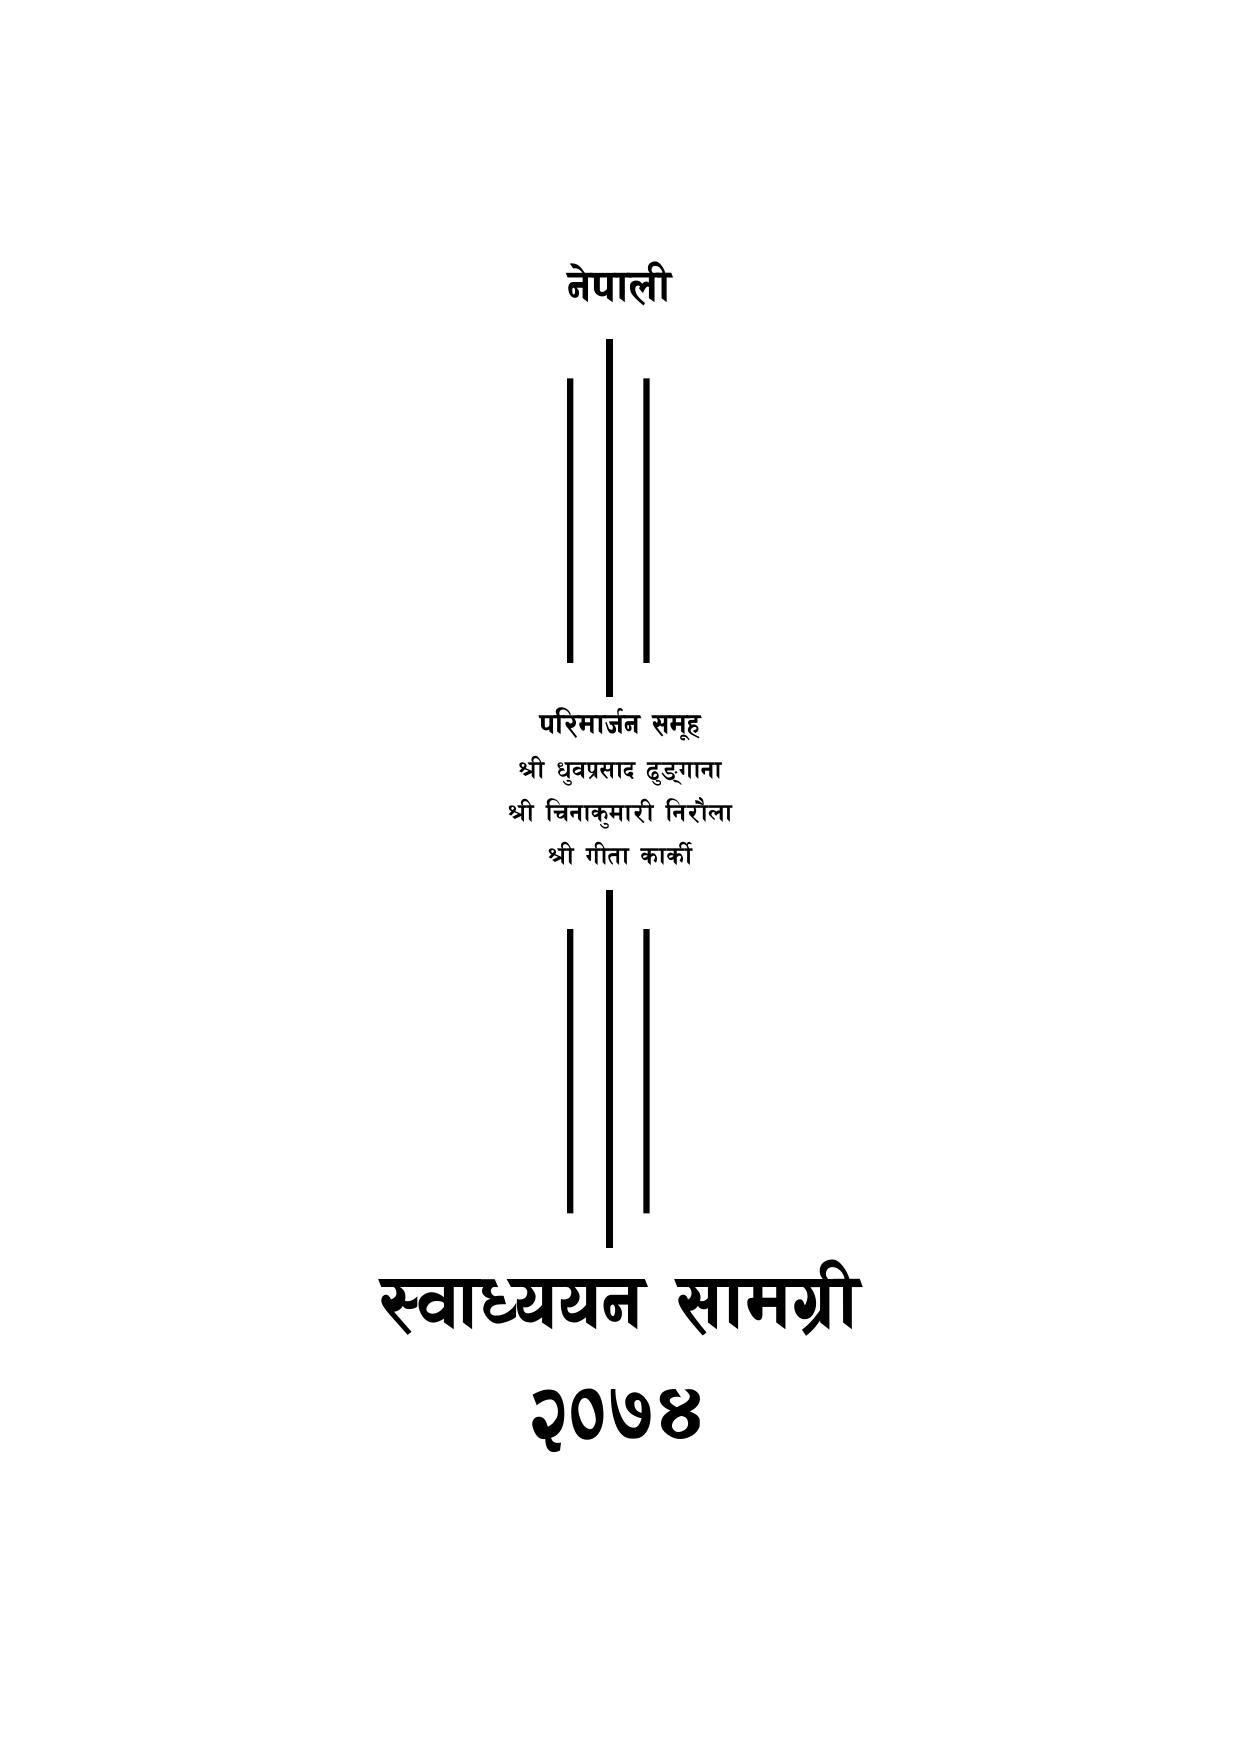 नेपाली स्वाध्ययन सामग्री २०७४